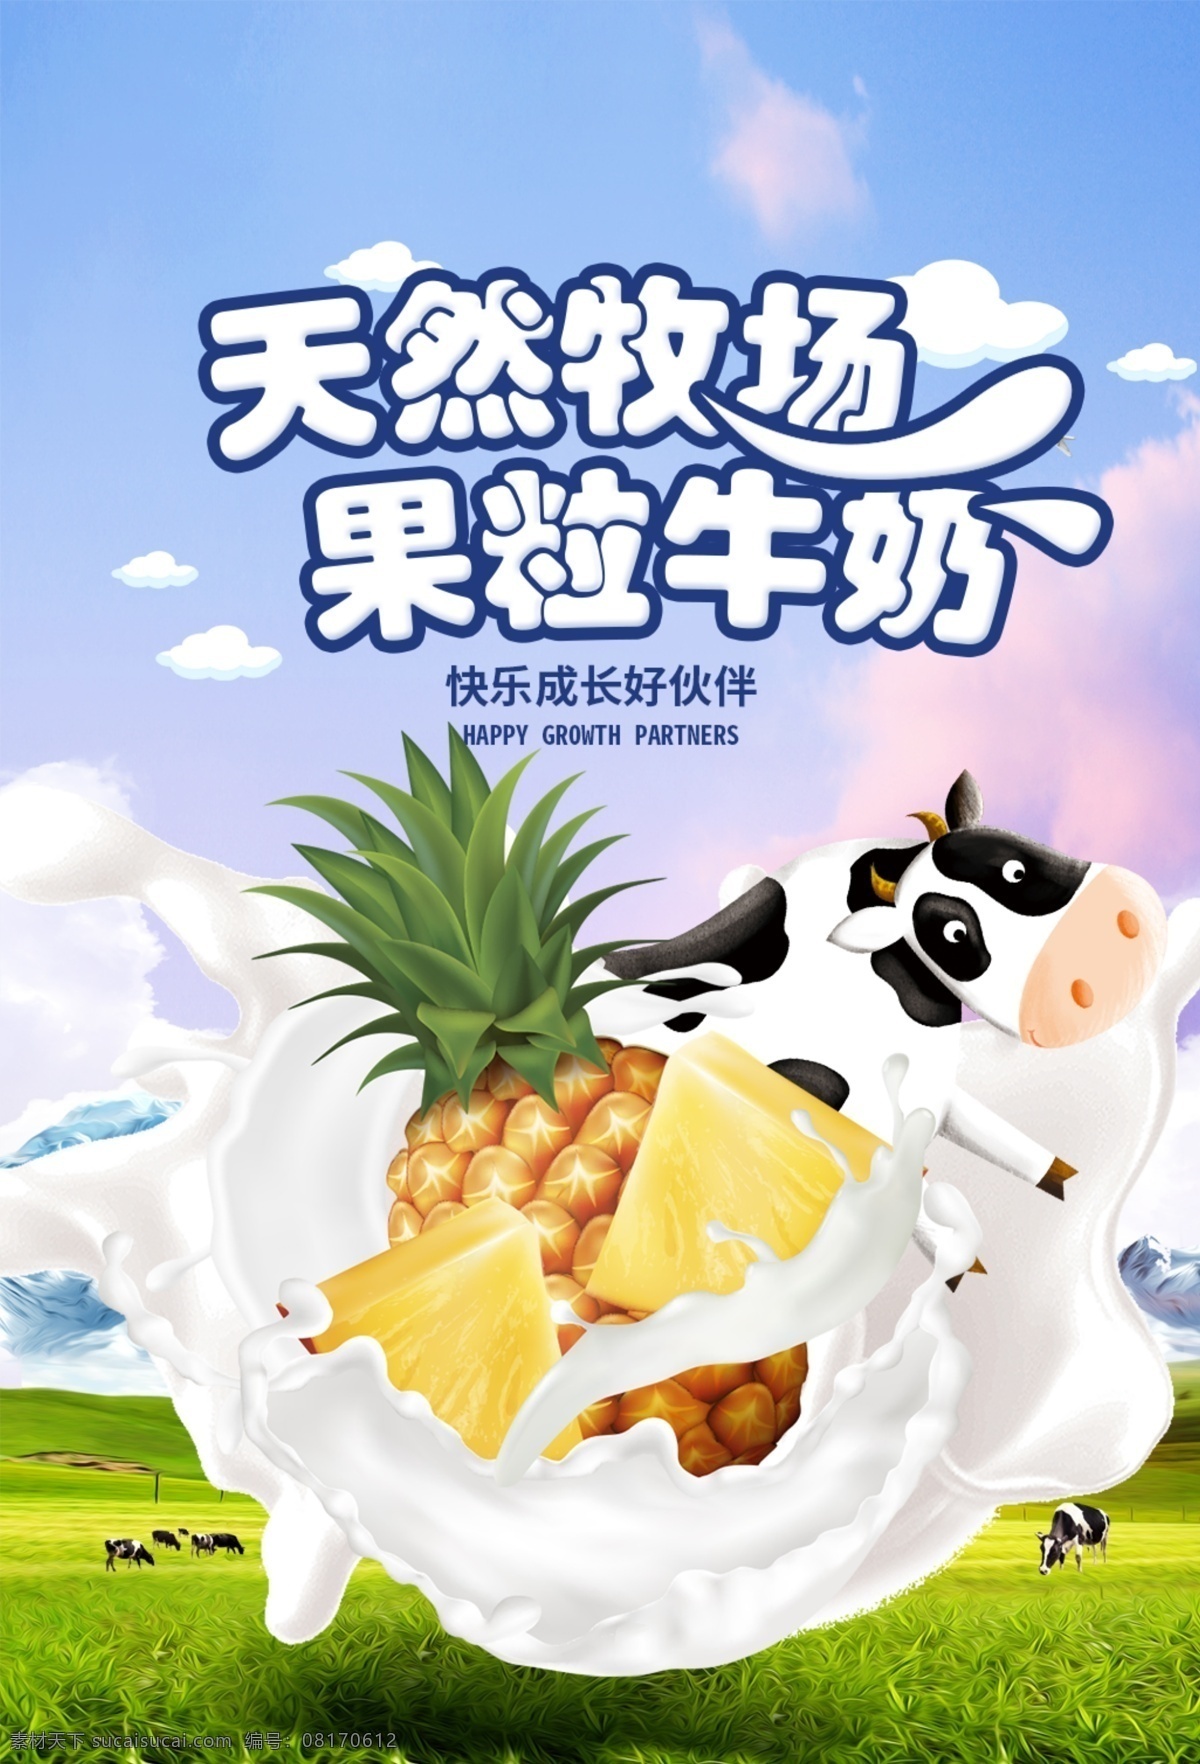 果粒 牛奶 饮品 活动 宣传海报 素材图片 果粒牛奶 宣传 海报 饮料 甜品 类